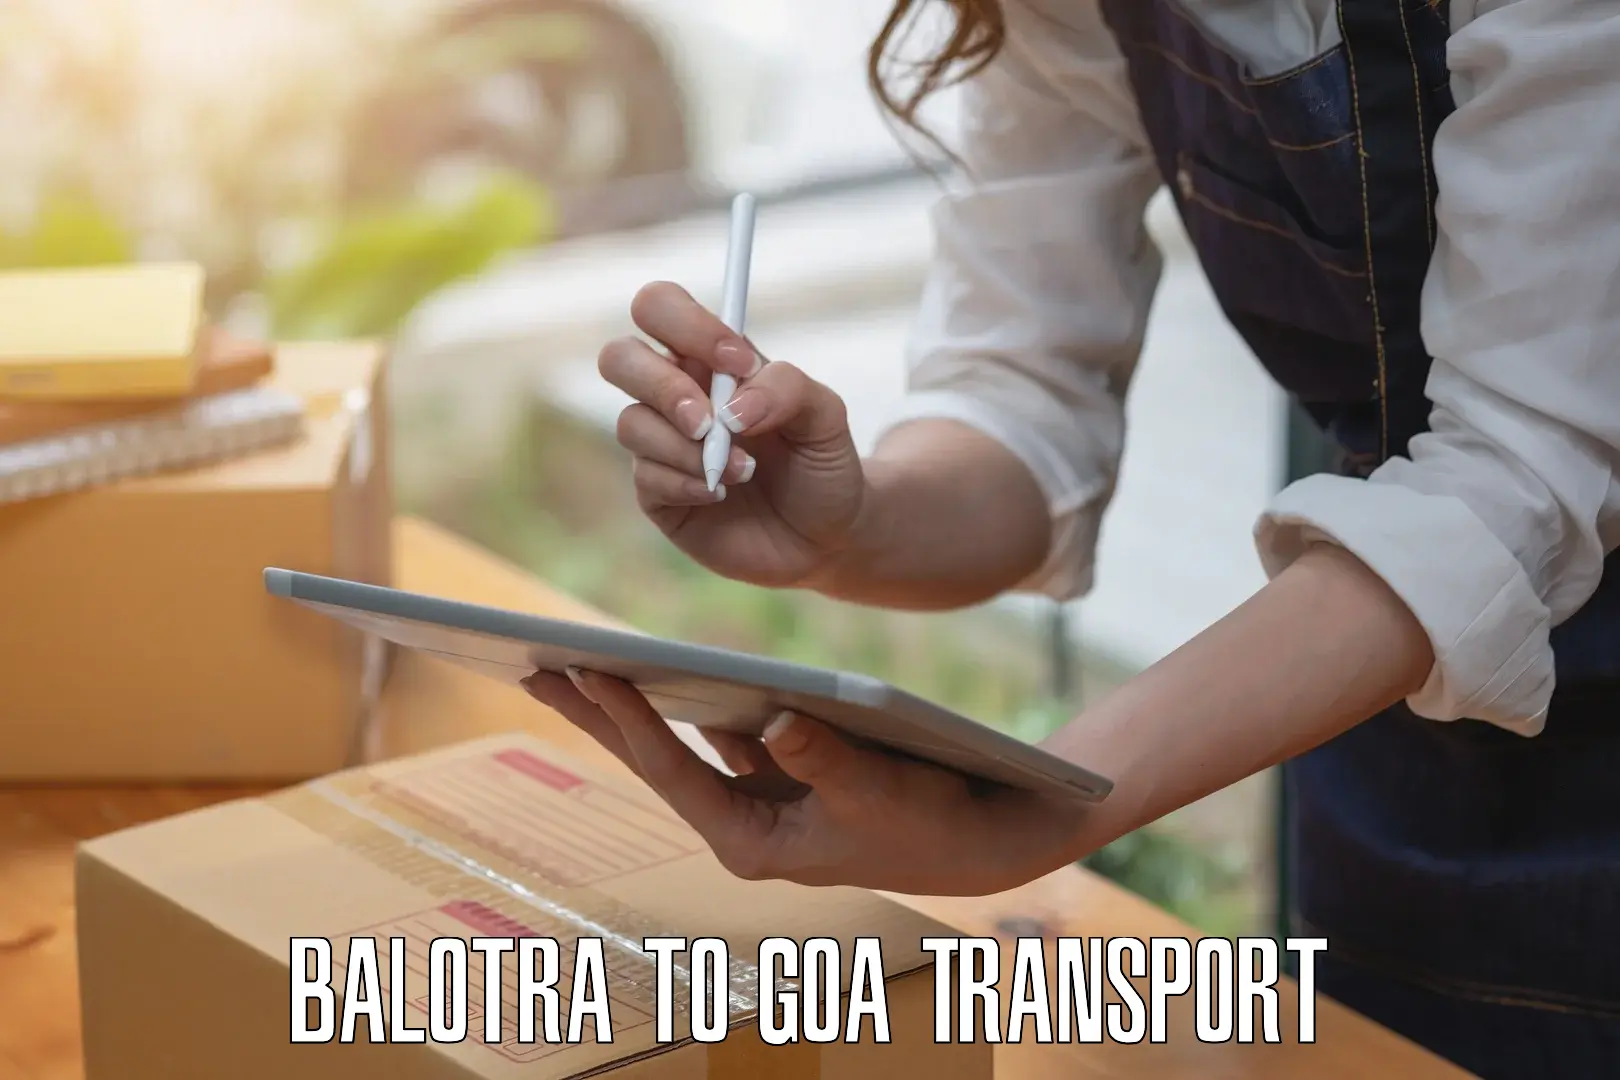 Air cargo transport services Balotra to Vasco da Gama